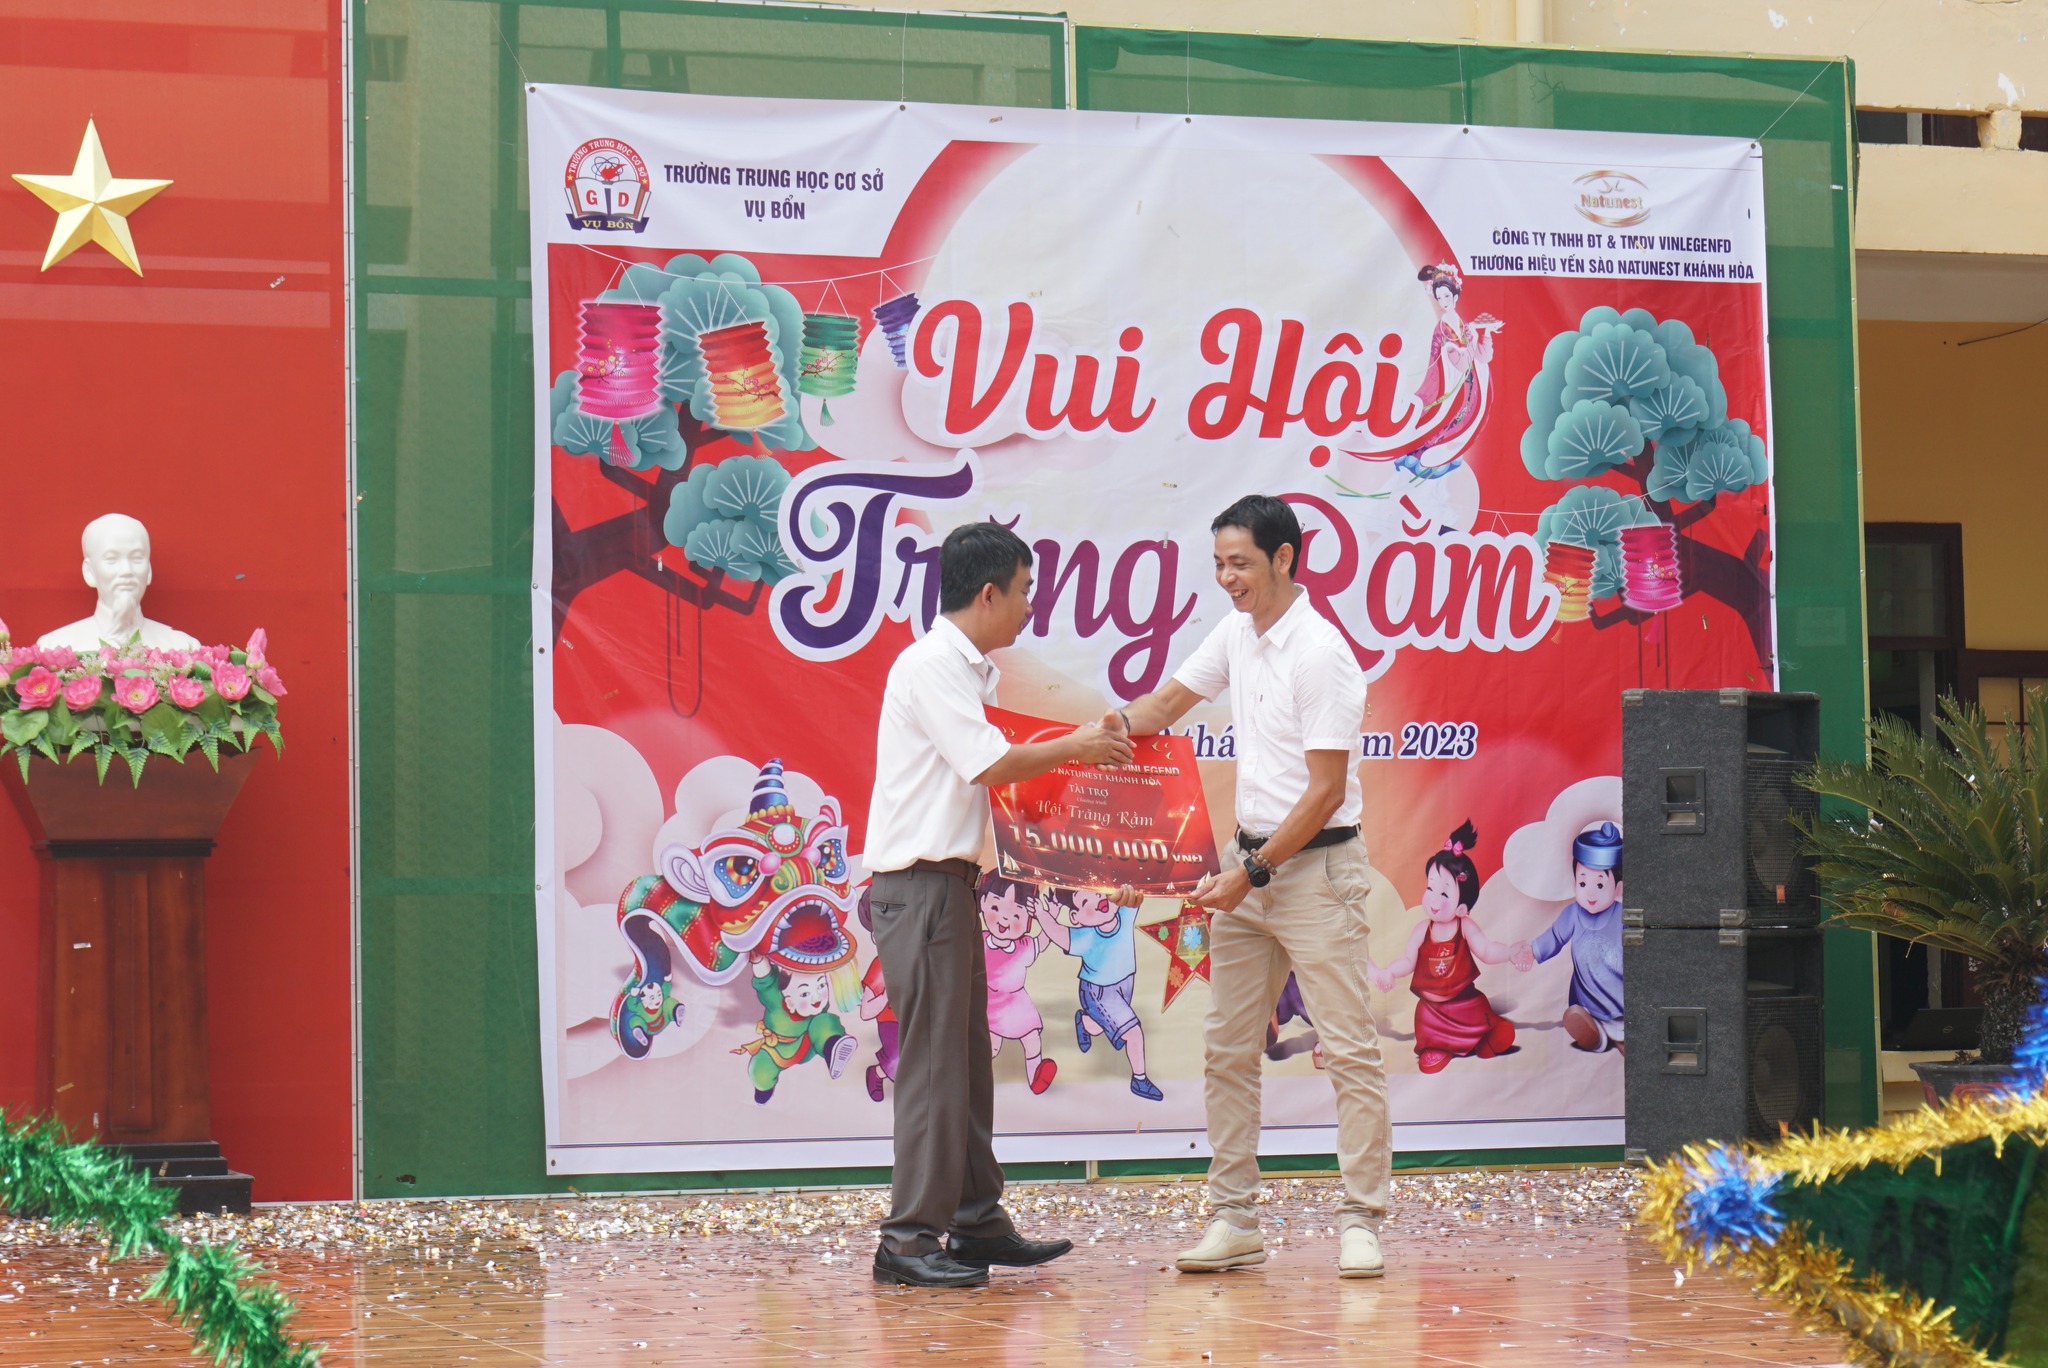 Natunest hỗ trợ chi phi giáo dục cho trường THCS Vụ bổn - Đắk Lắk